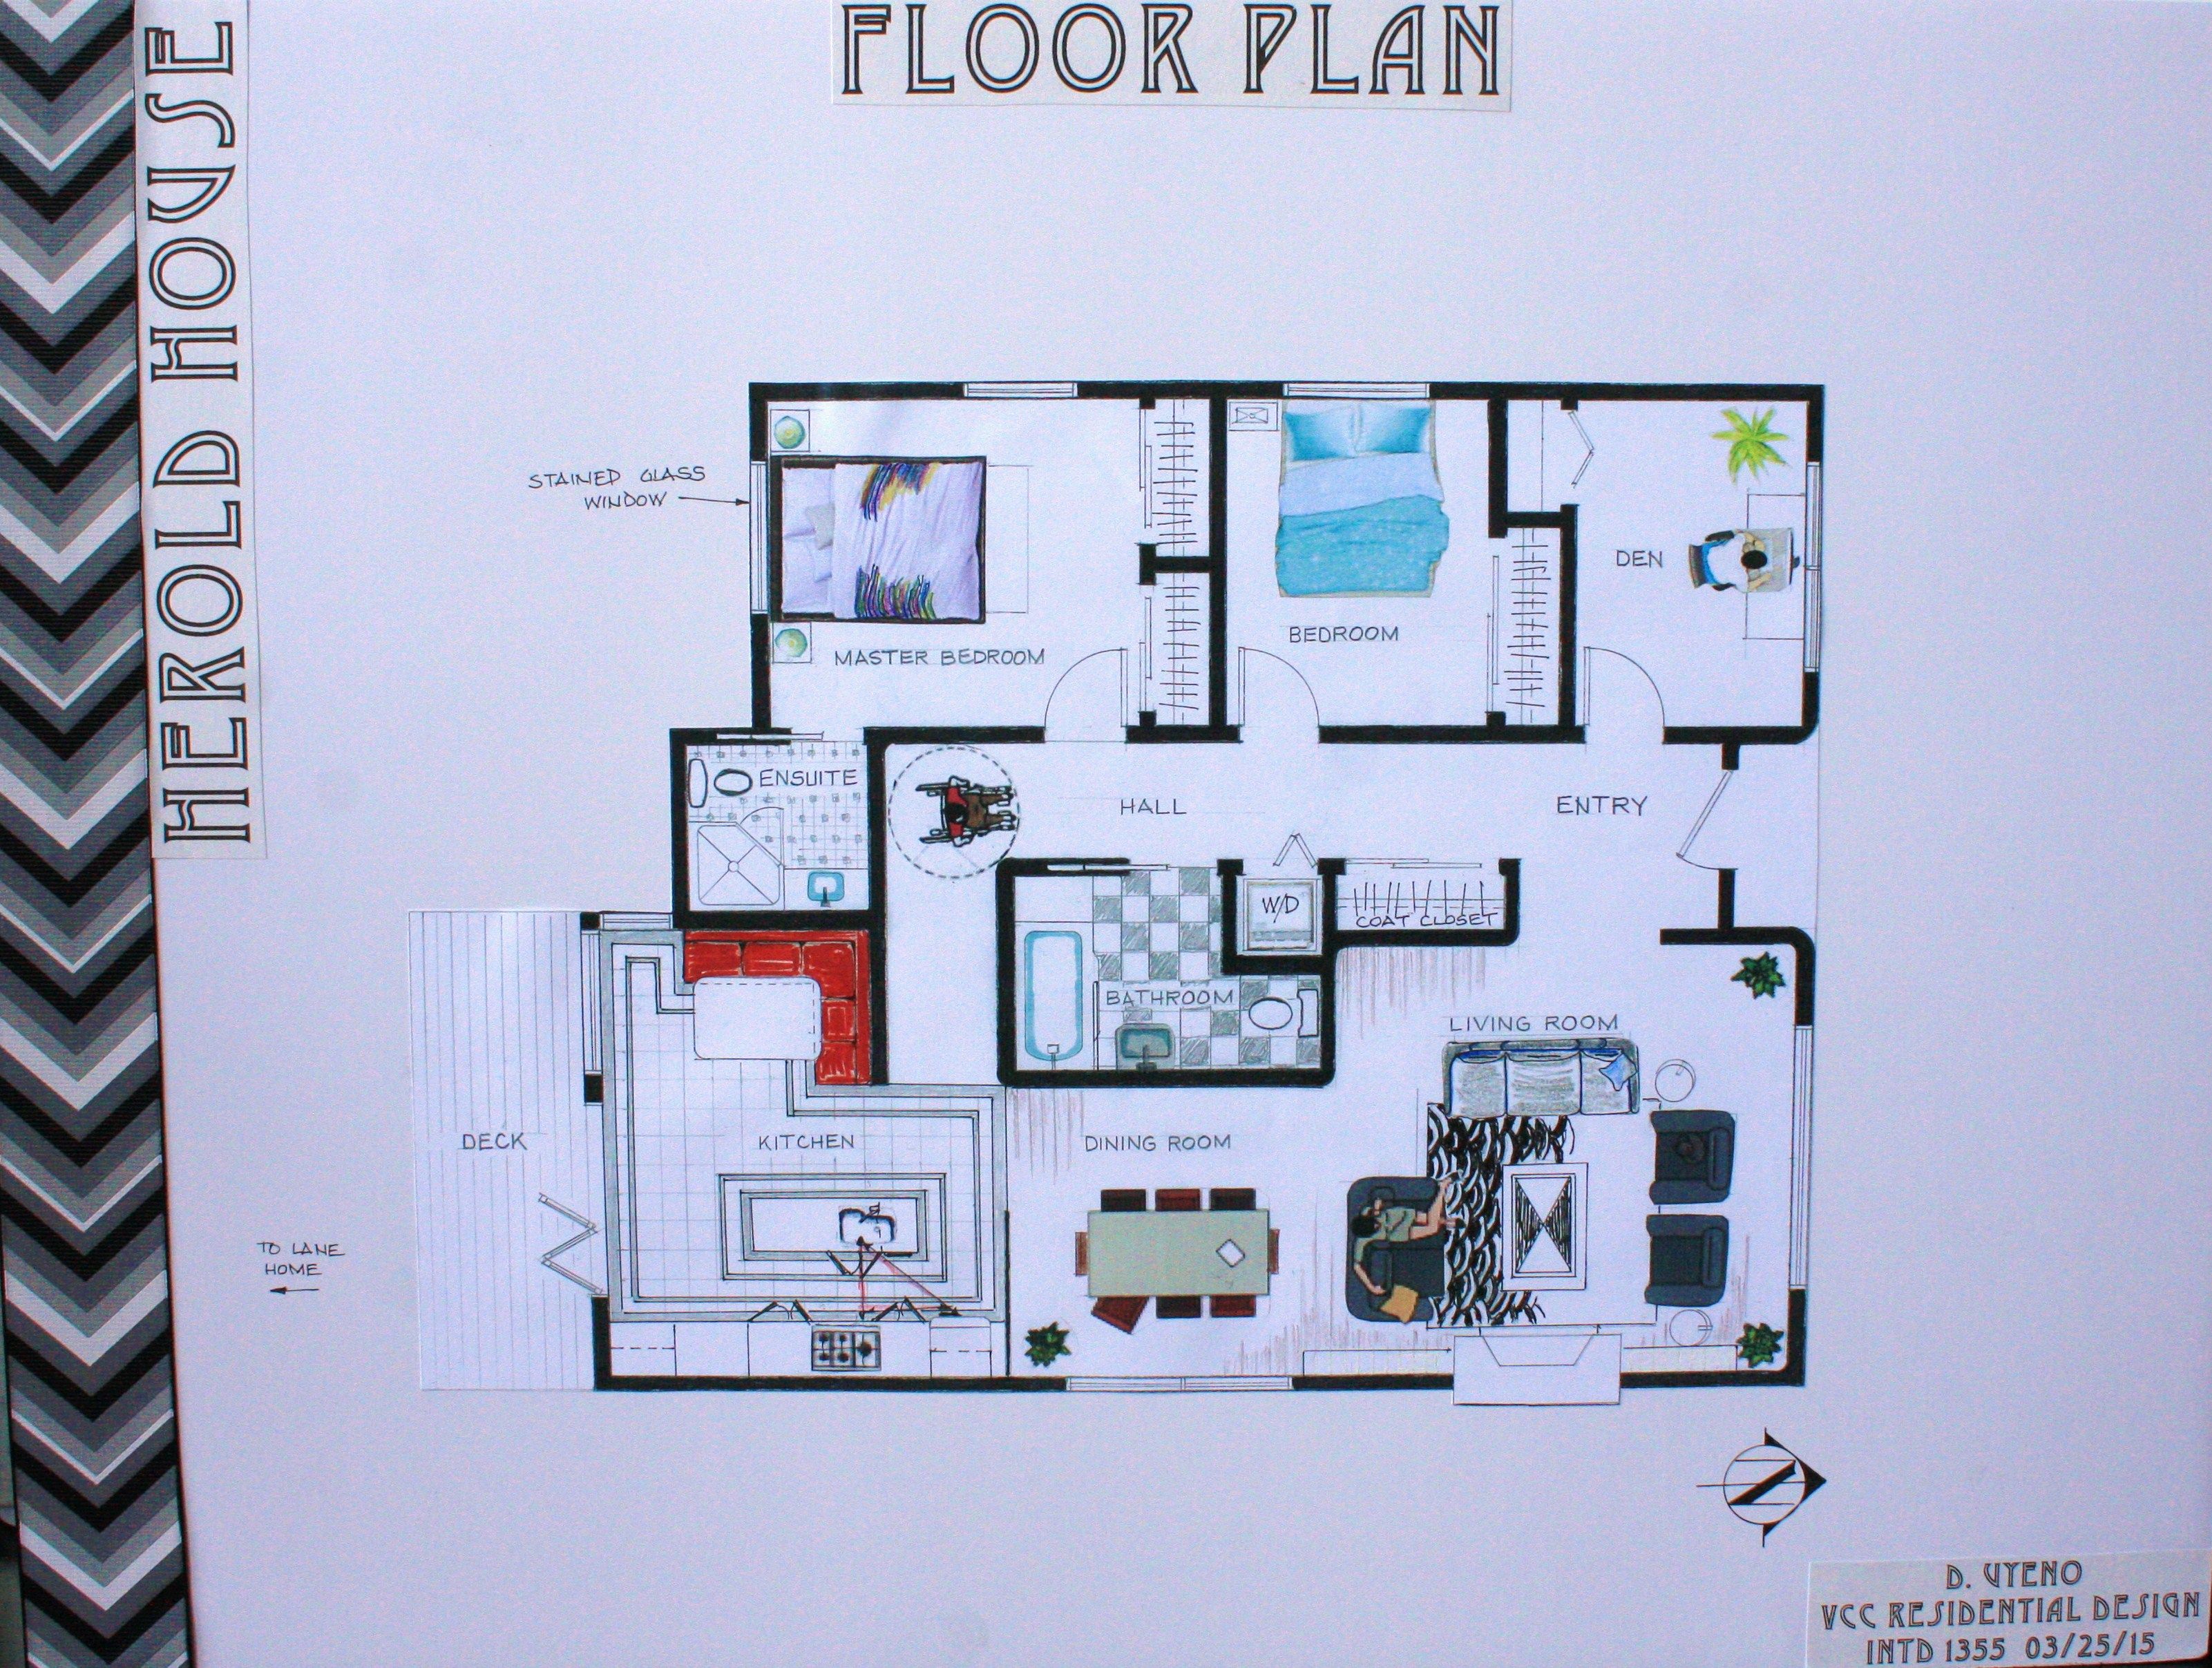 Herold house floor plan for VCC Residential Design hand